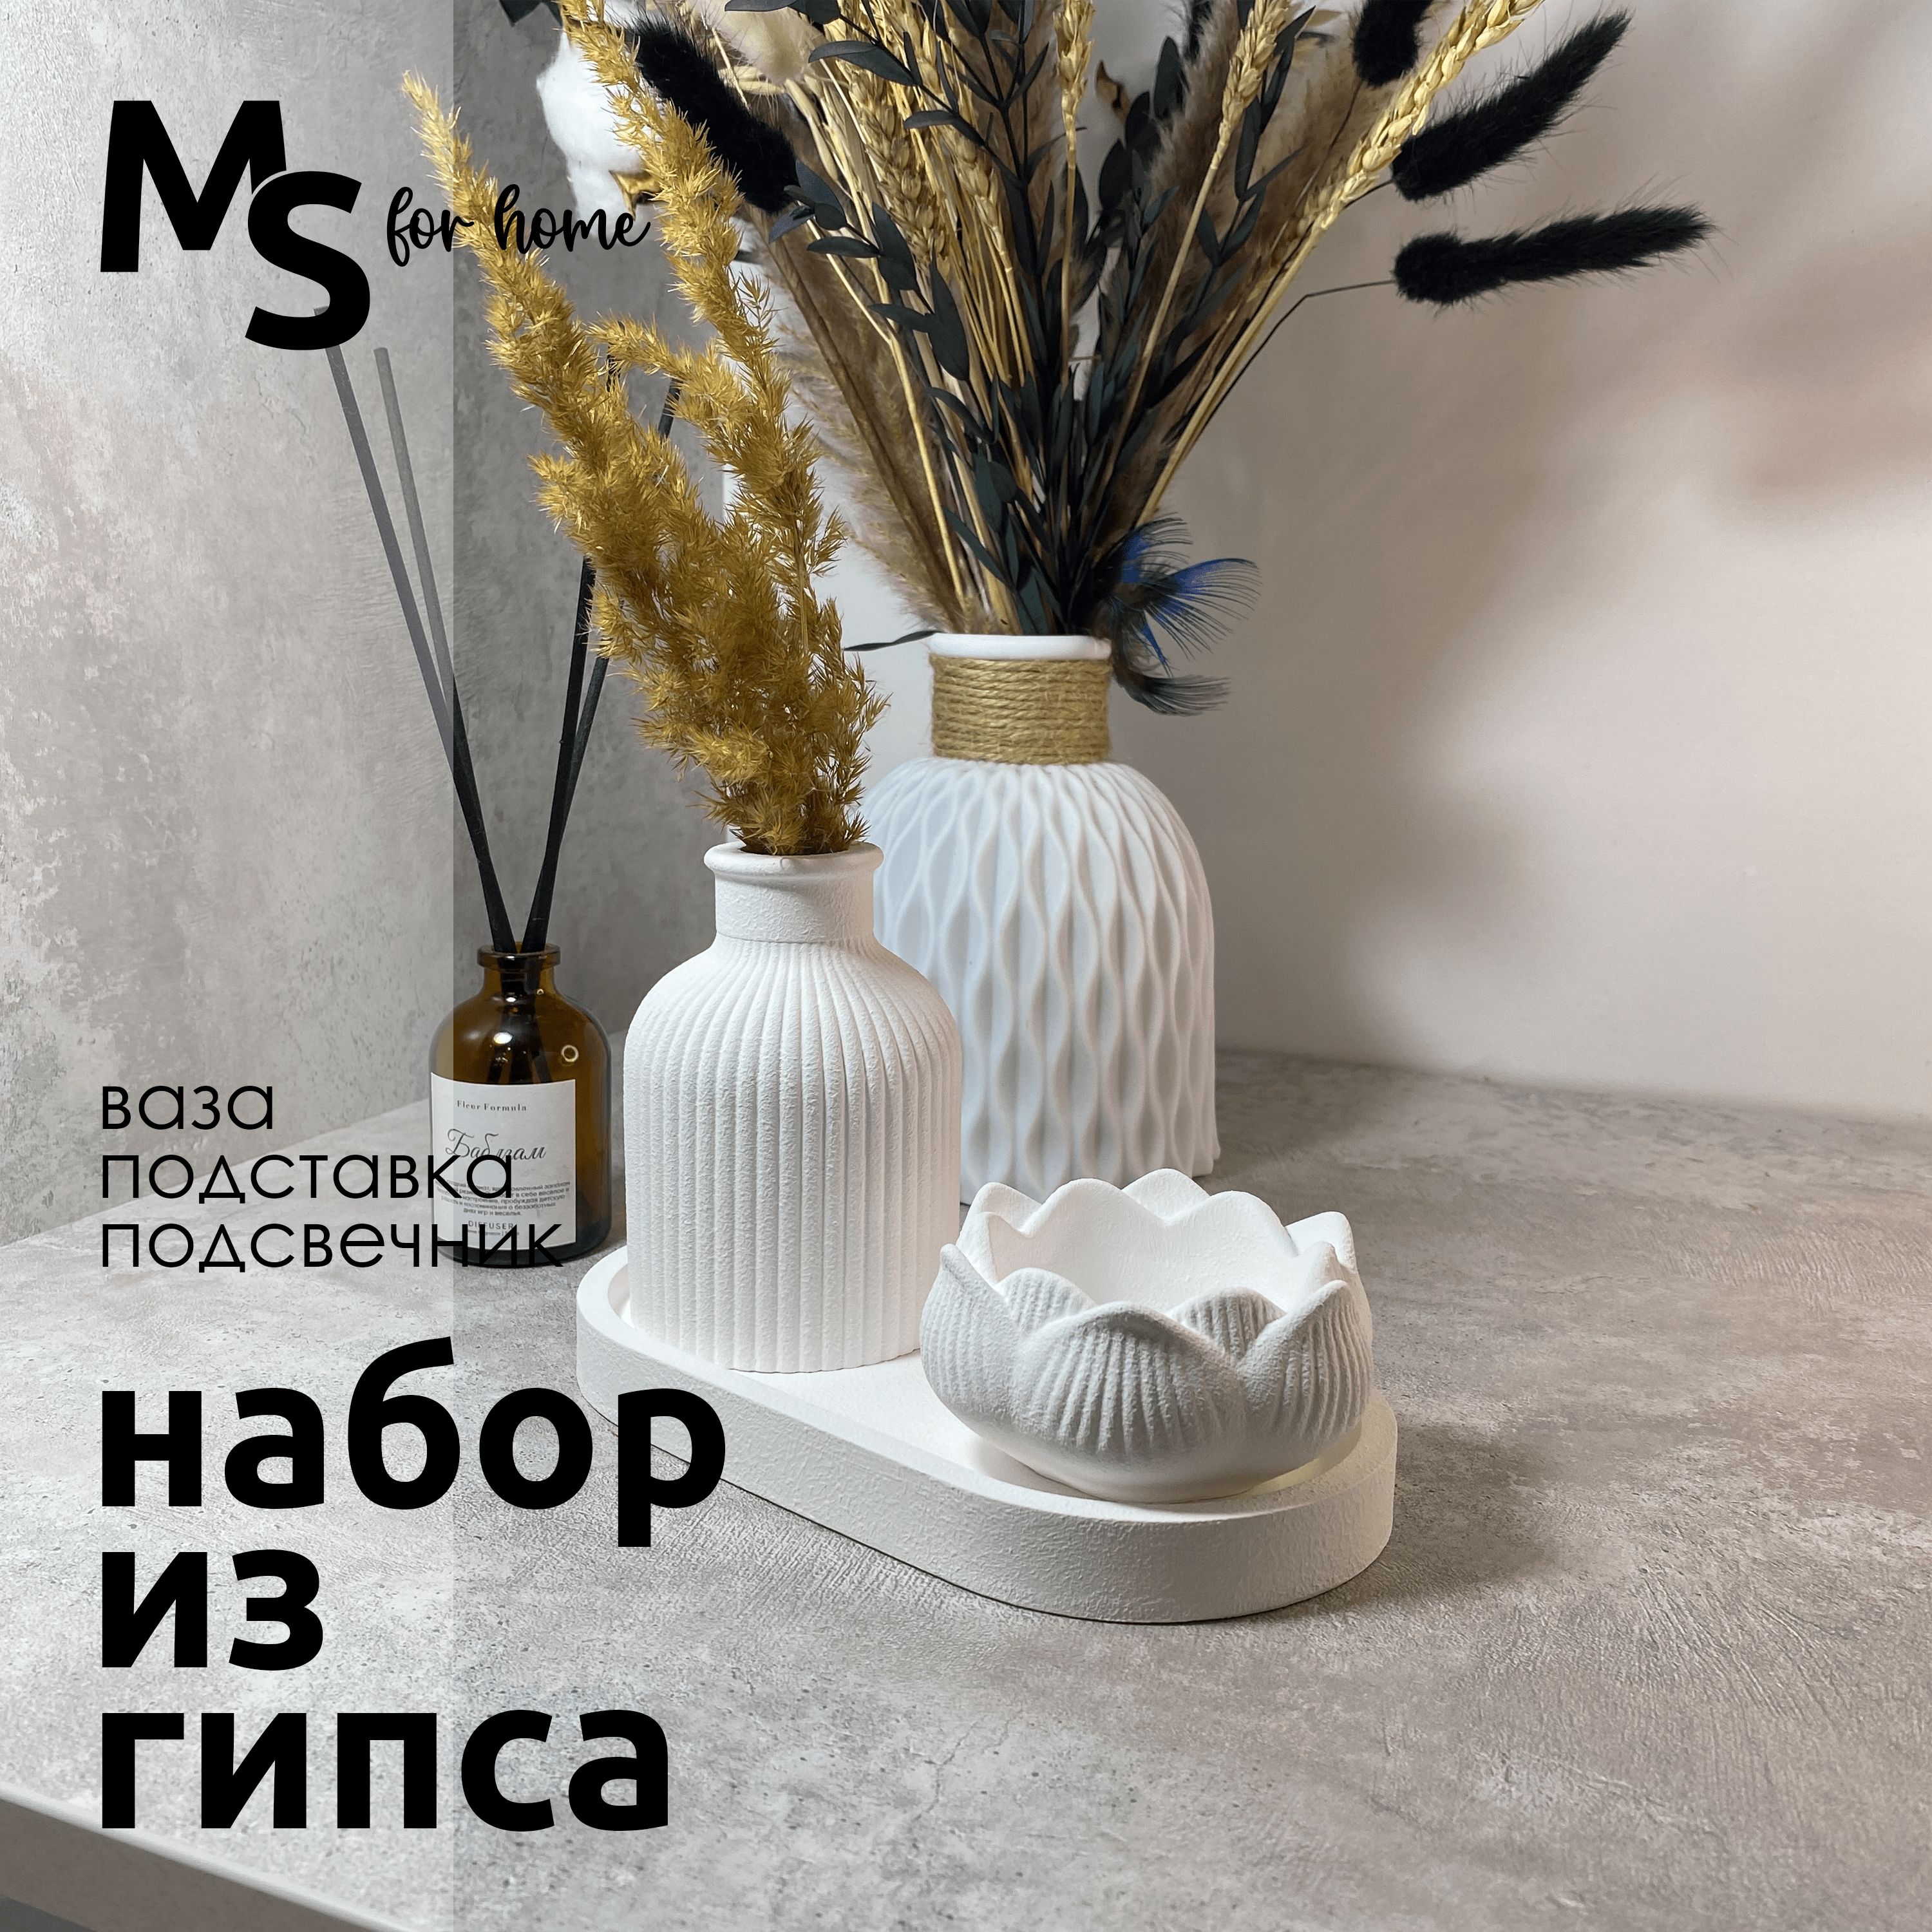 Декоративныйнабордляинтерьера-msforhome.Вкомплекте:ваза+подставка+подсвечник.